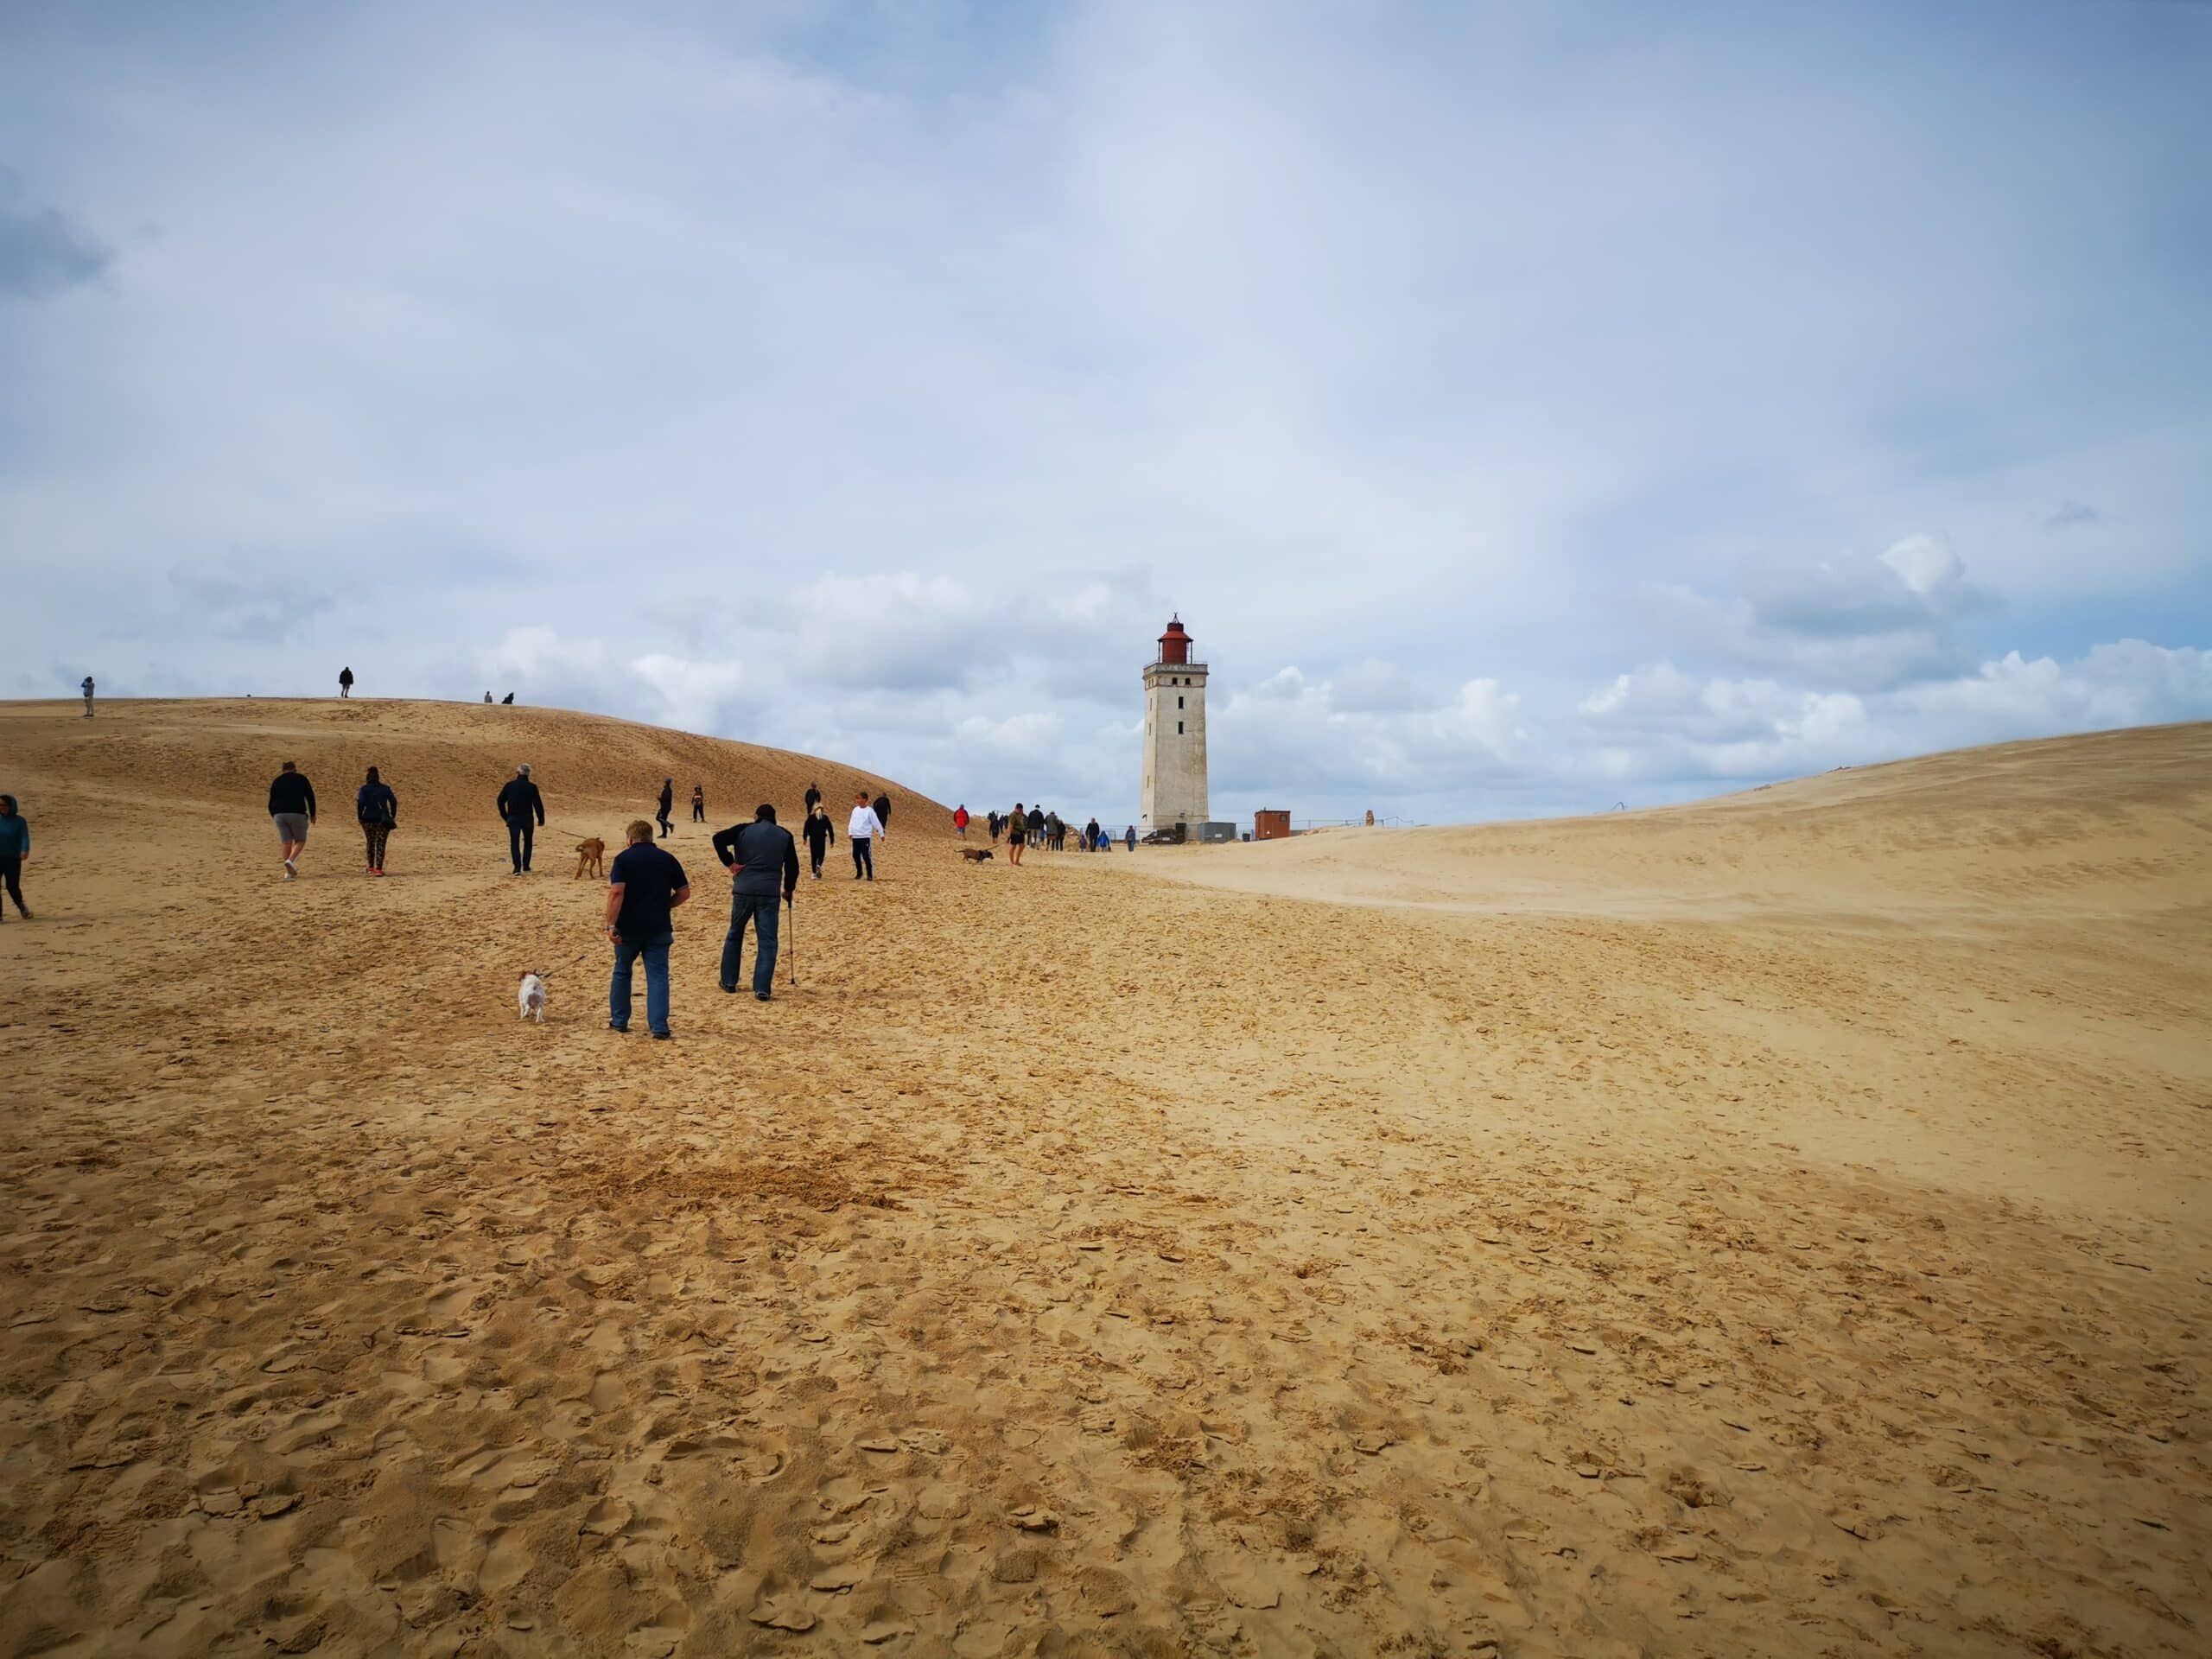 Eine Gruppe von Menschen, die auf einer Sanddüne in der Nähe eines Leuchtturms spazieren gehen.